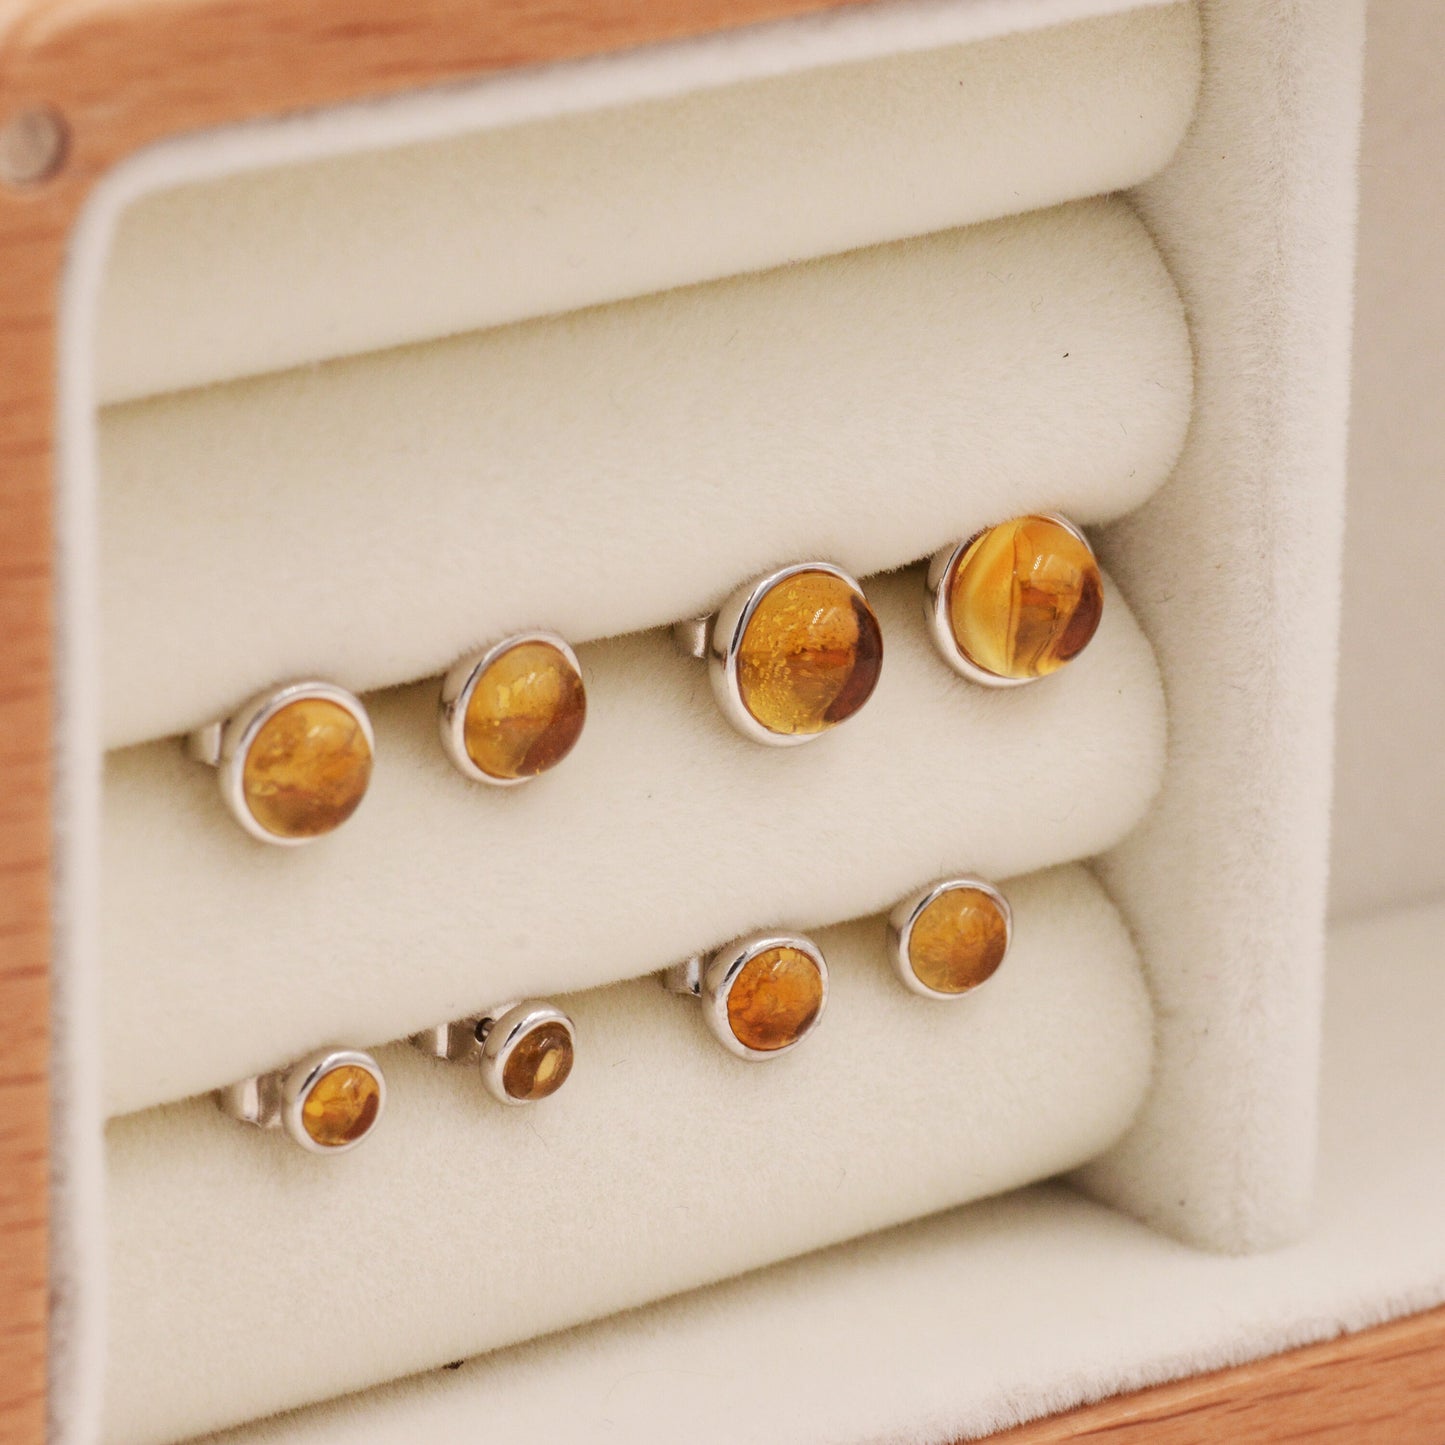 Natural Citrine Crystal Stud Earrings in Sterling Silver - 4 sizes - Genuine Yellow Citrine Crystal Stud Earrings  - Semi Precious Gemstone